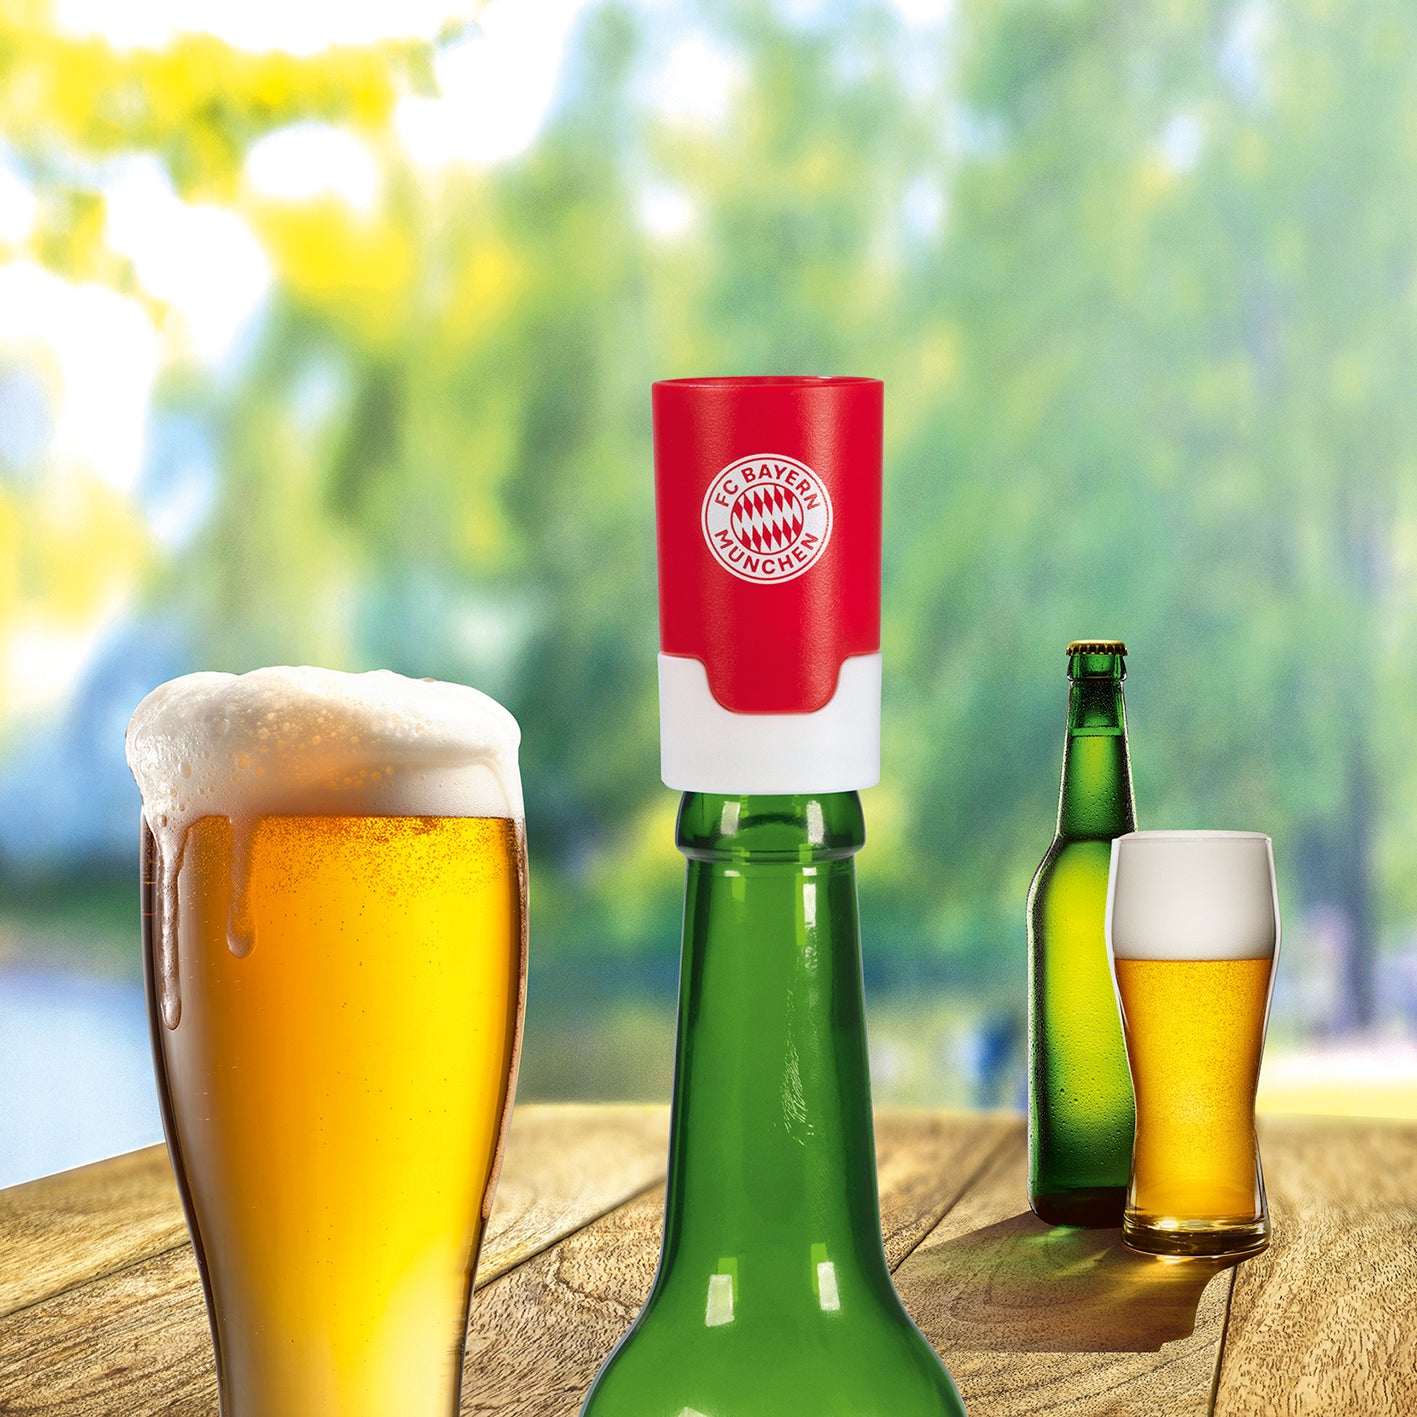 Bier-Aufbereiter im FC Bayern München-Design